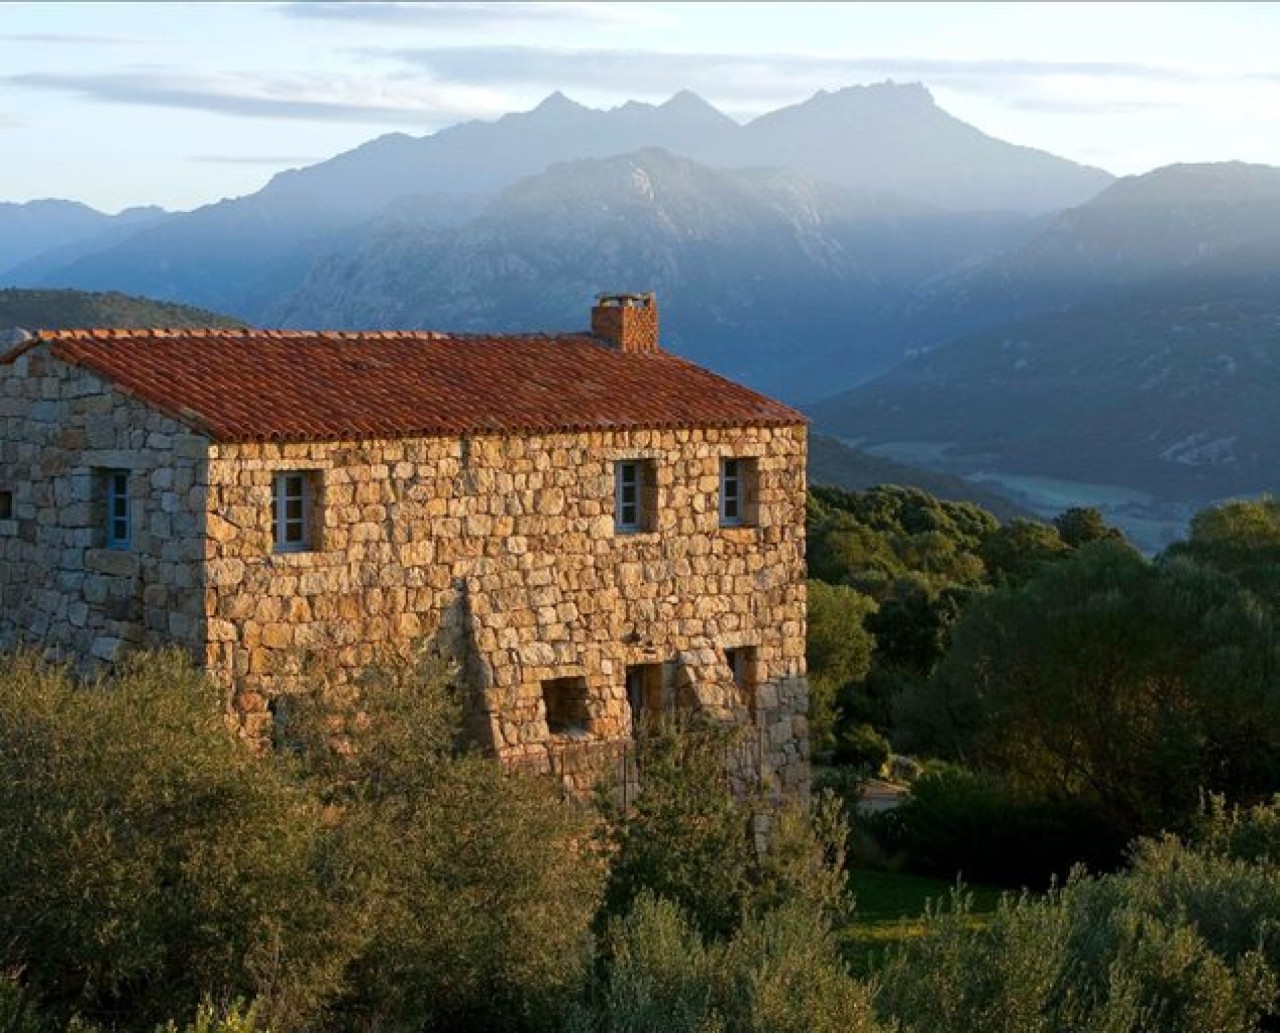 Corse, l'île de beauté